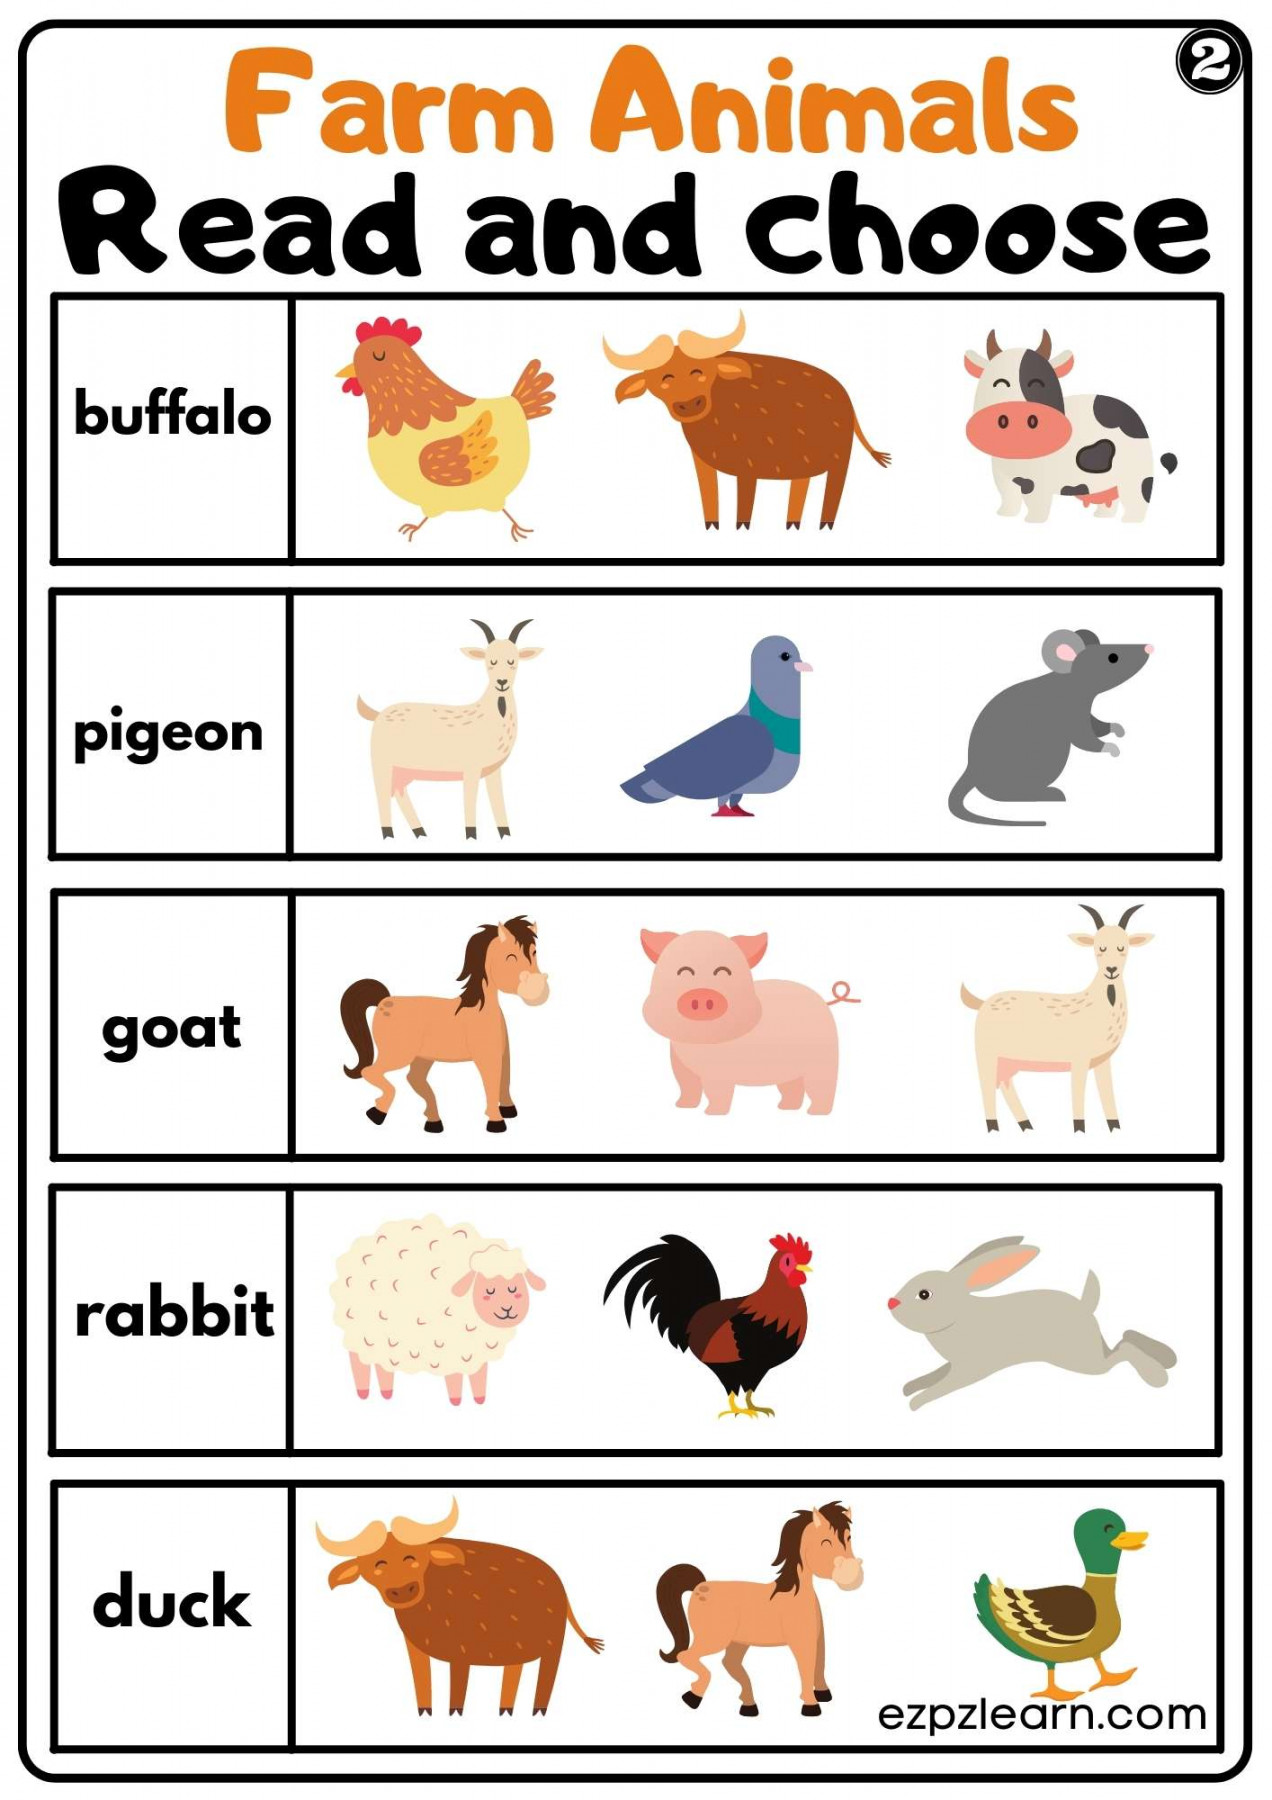 Farm Animals Read and Choose Worksheet for Kindergarten or ESL